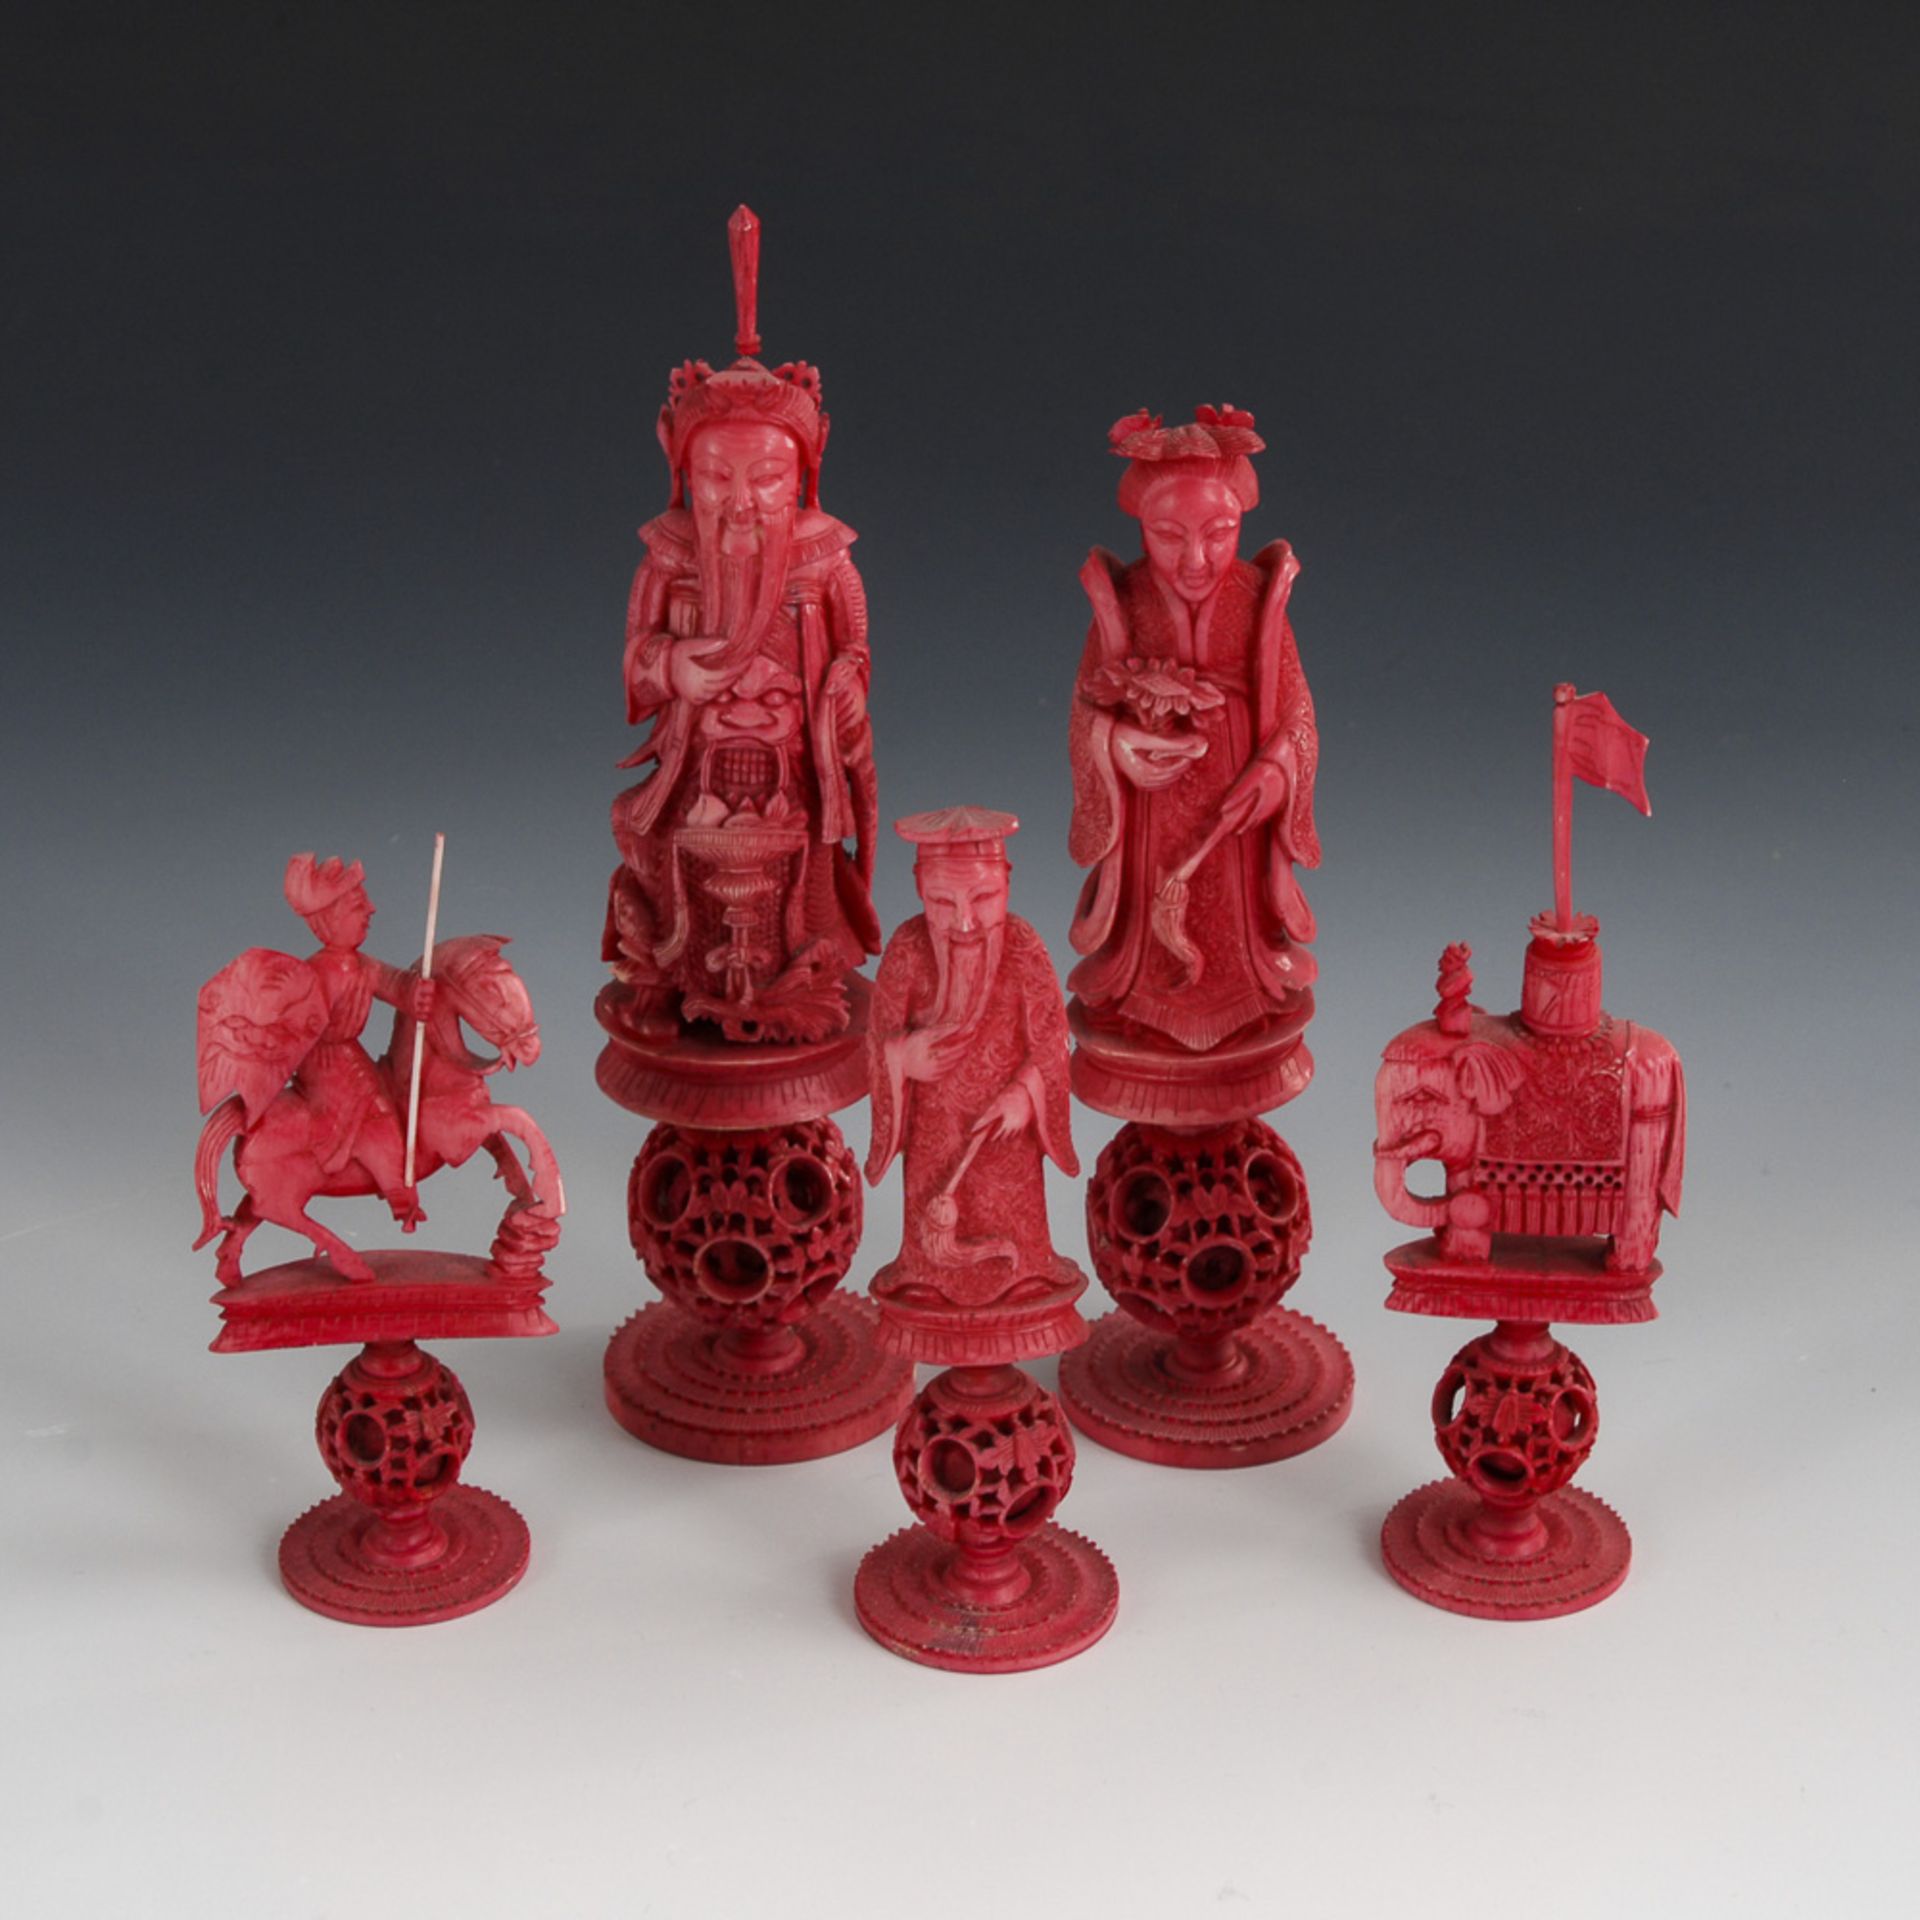 Schachspielfiguren - Elfenbein.China, um 1870, teils rot eingefärbt. Vollständig. Max. H 15 cm. - Bild 2 aus 4